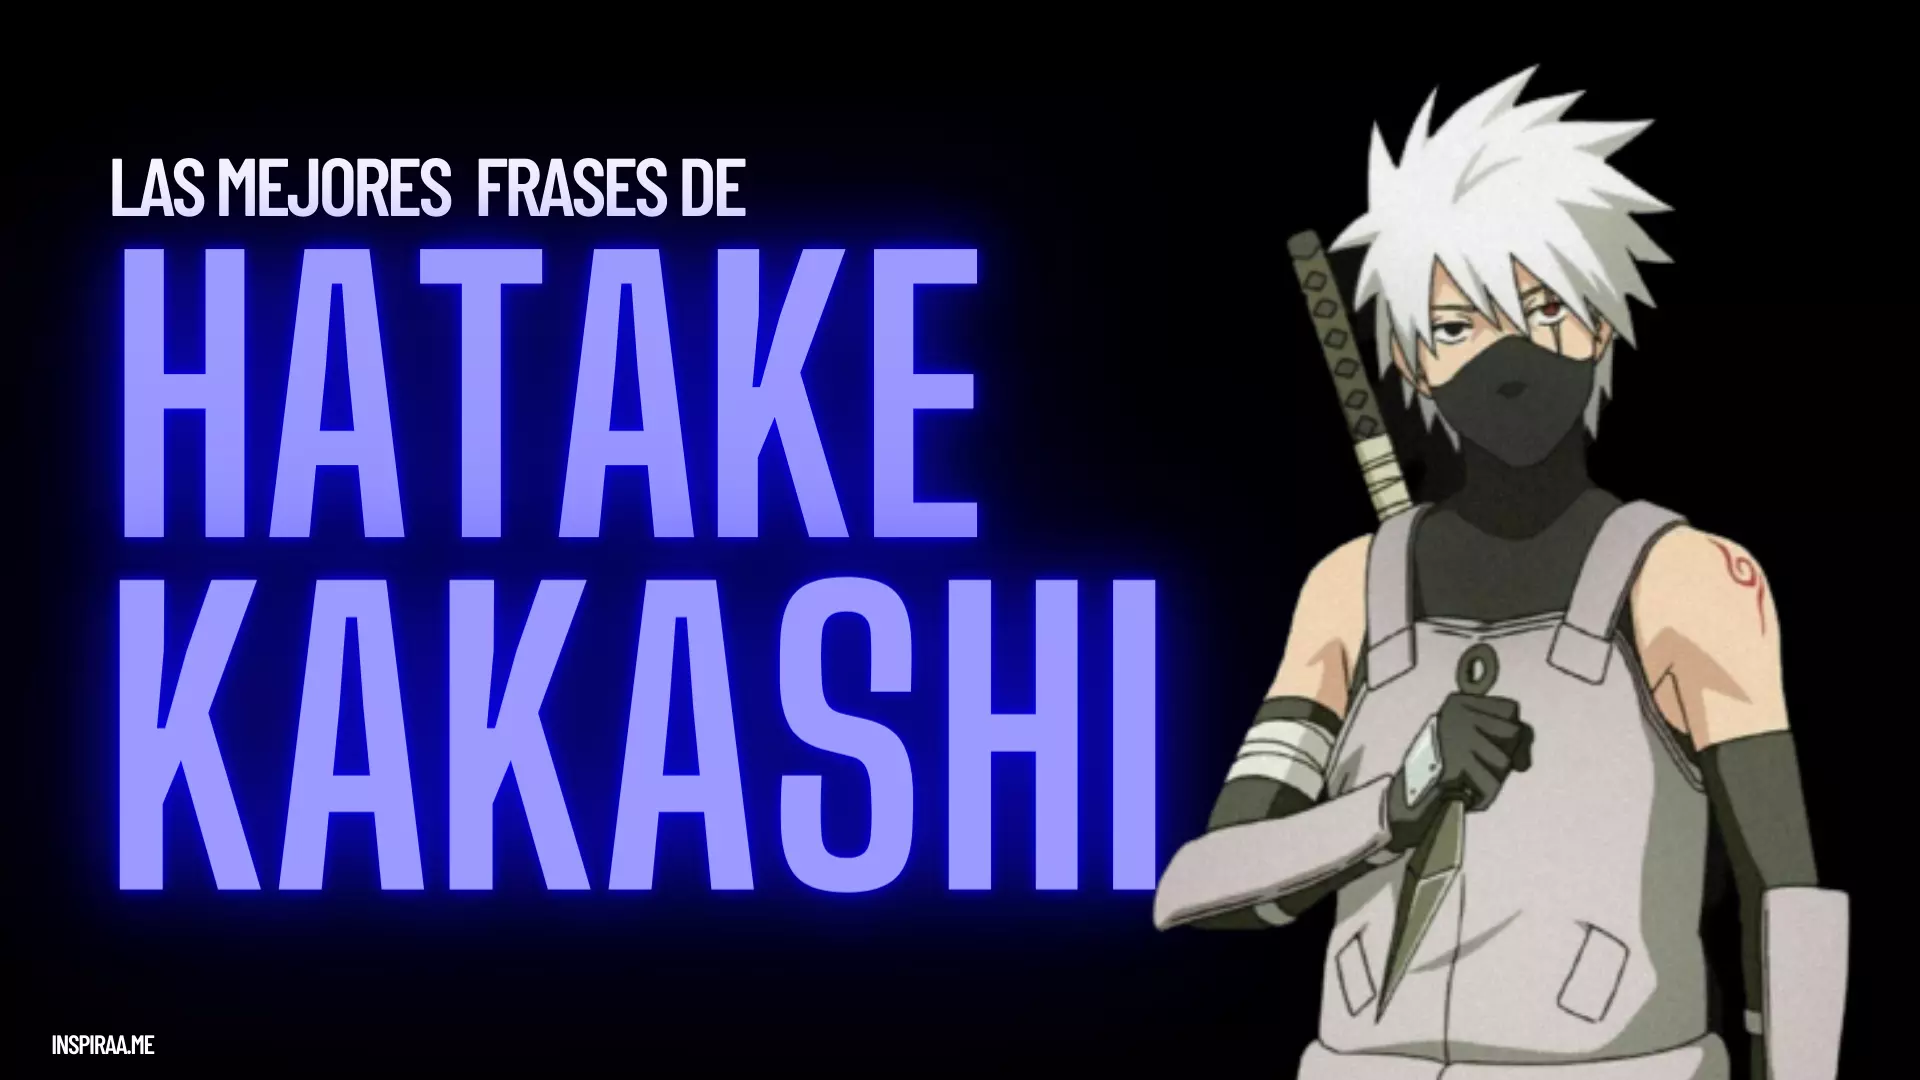 Frases de Hatake Kakashi el maestro del equipo 7 - Frases de Anime